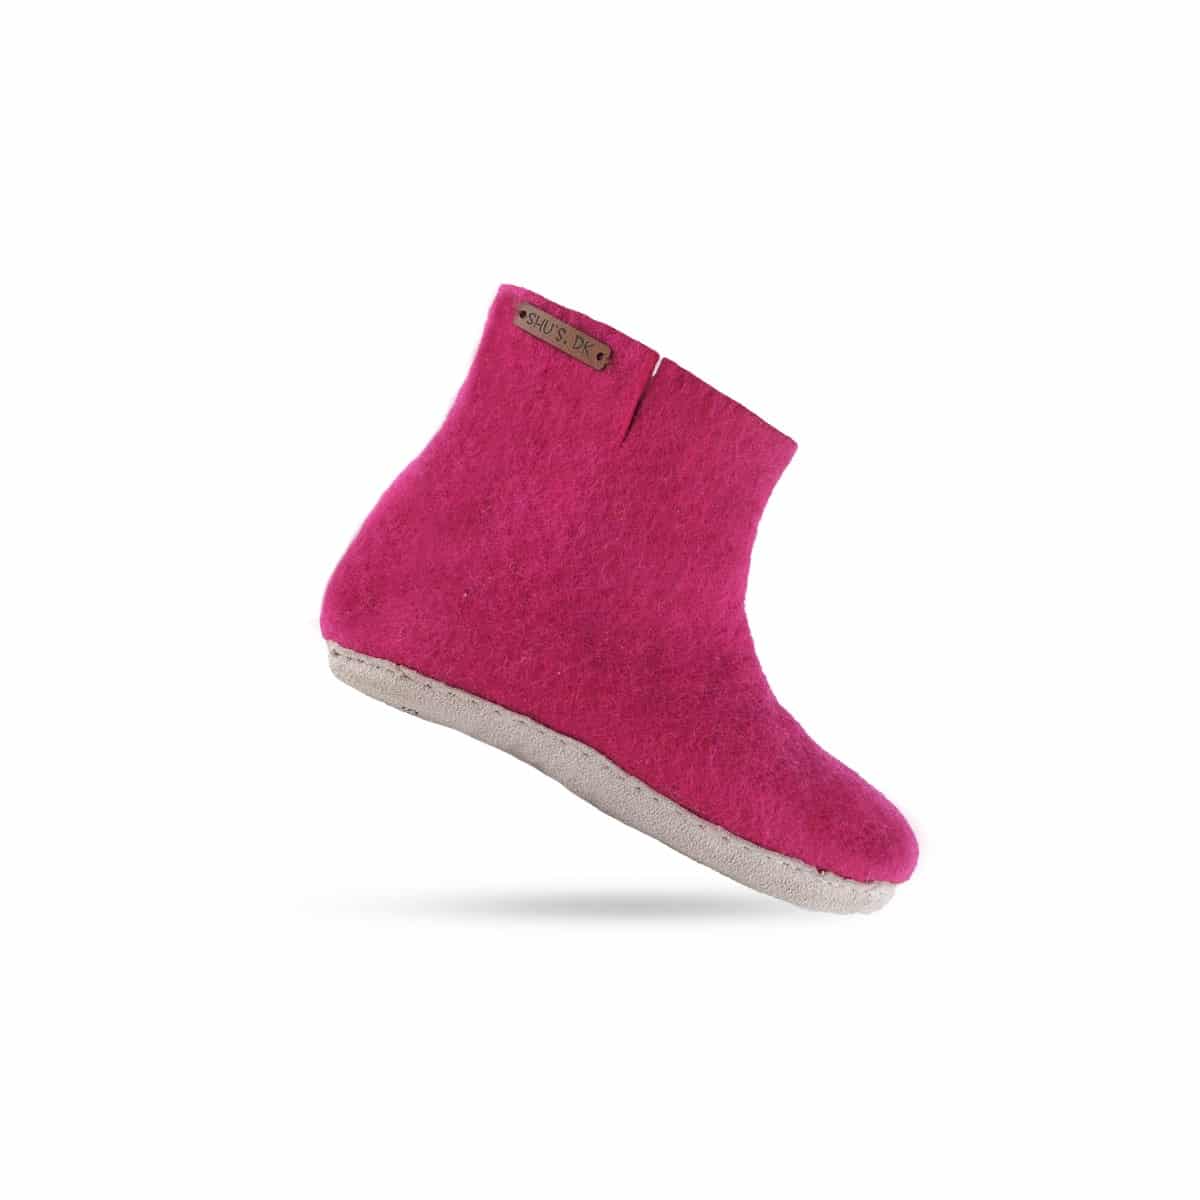 Billede af Uldstøvle (100% ren uld) - Model pink m/sål i skind - Dansk Design fra SHUS